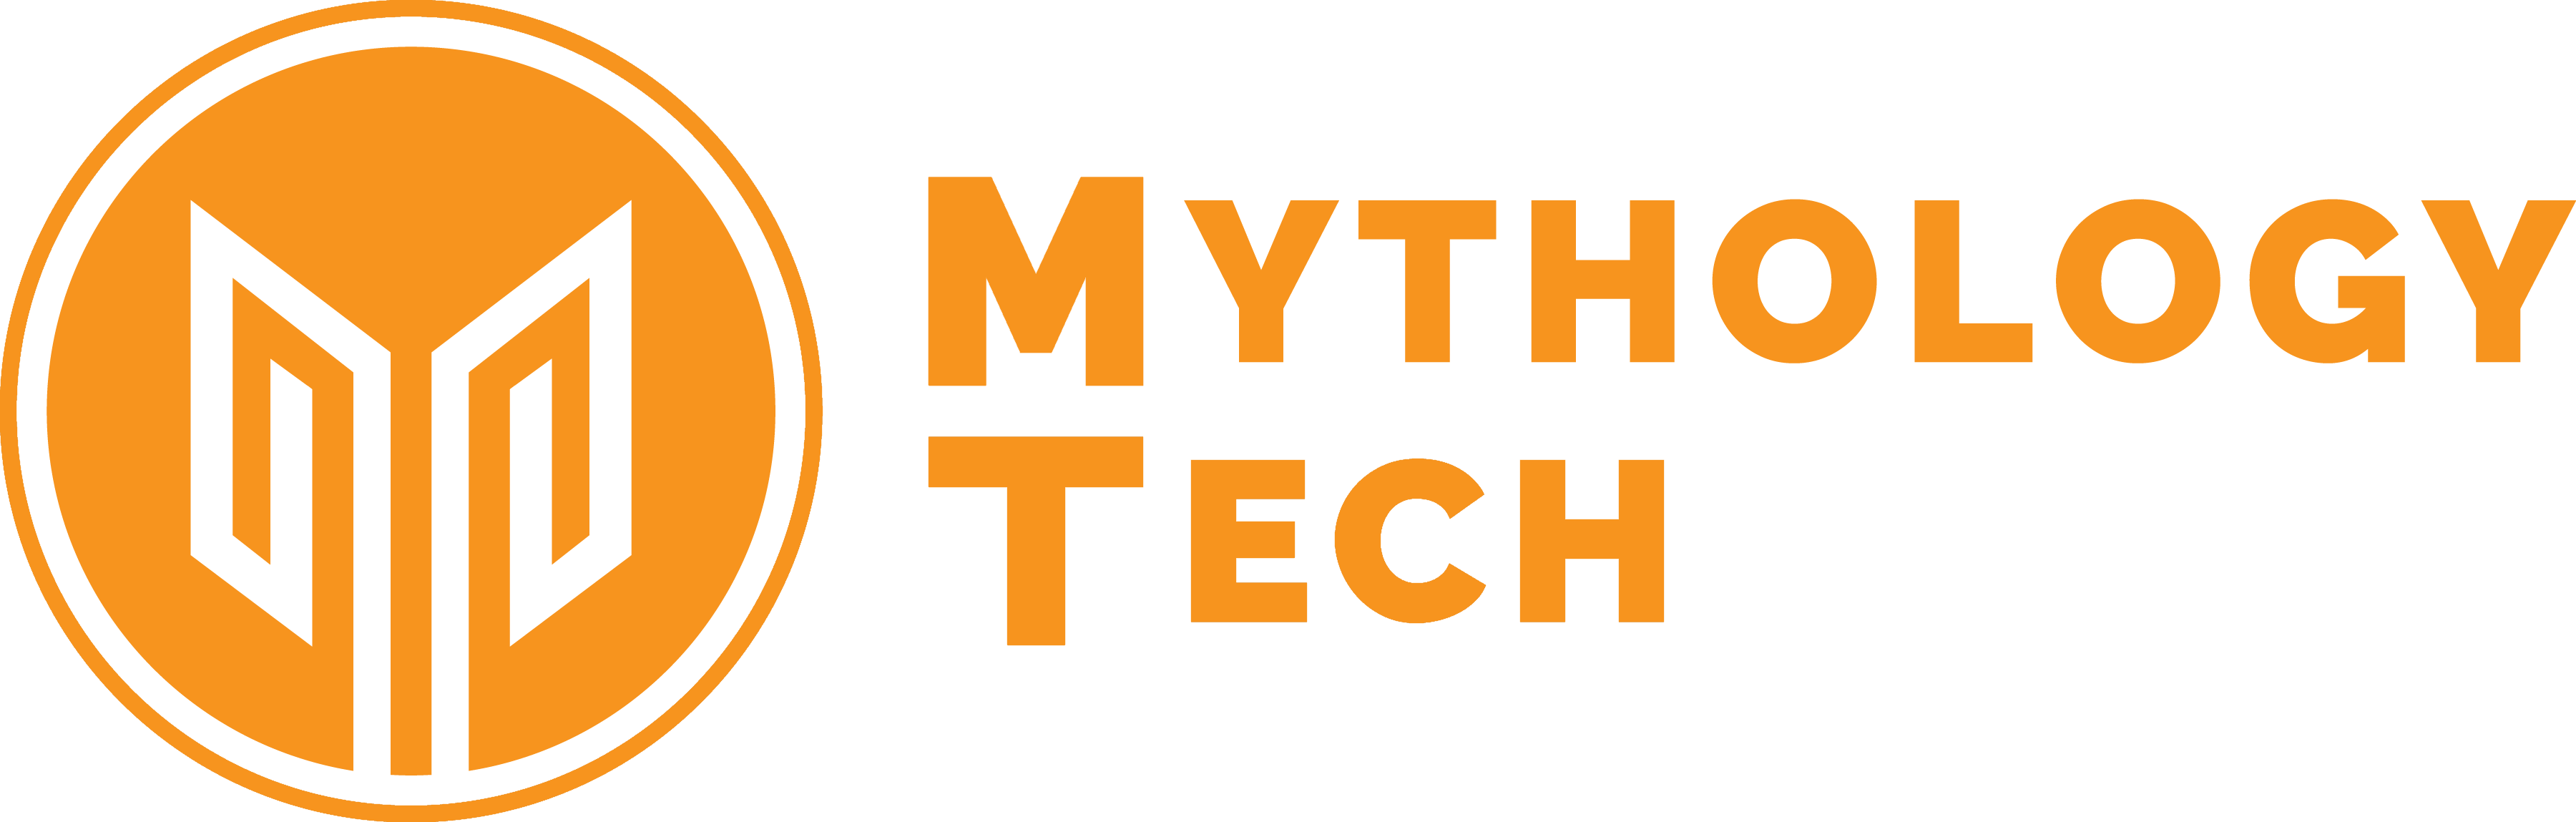 Mythology Tech